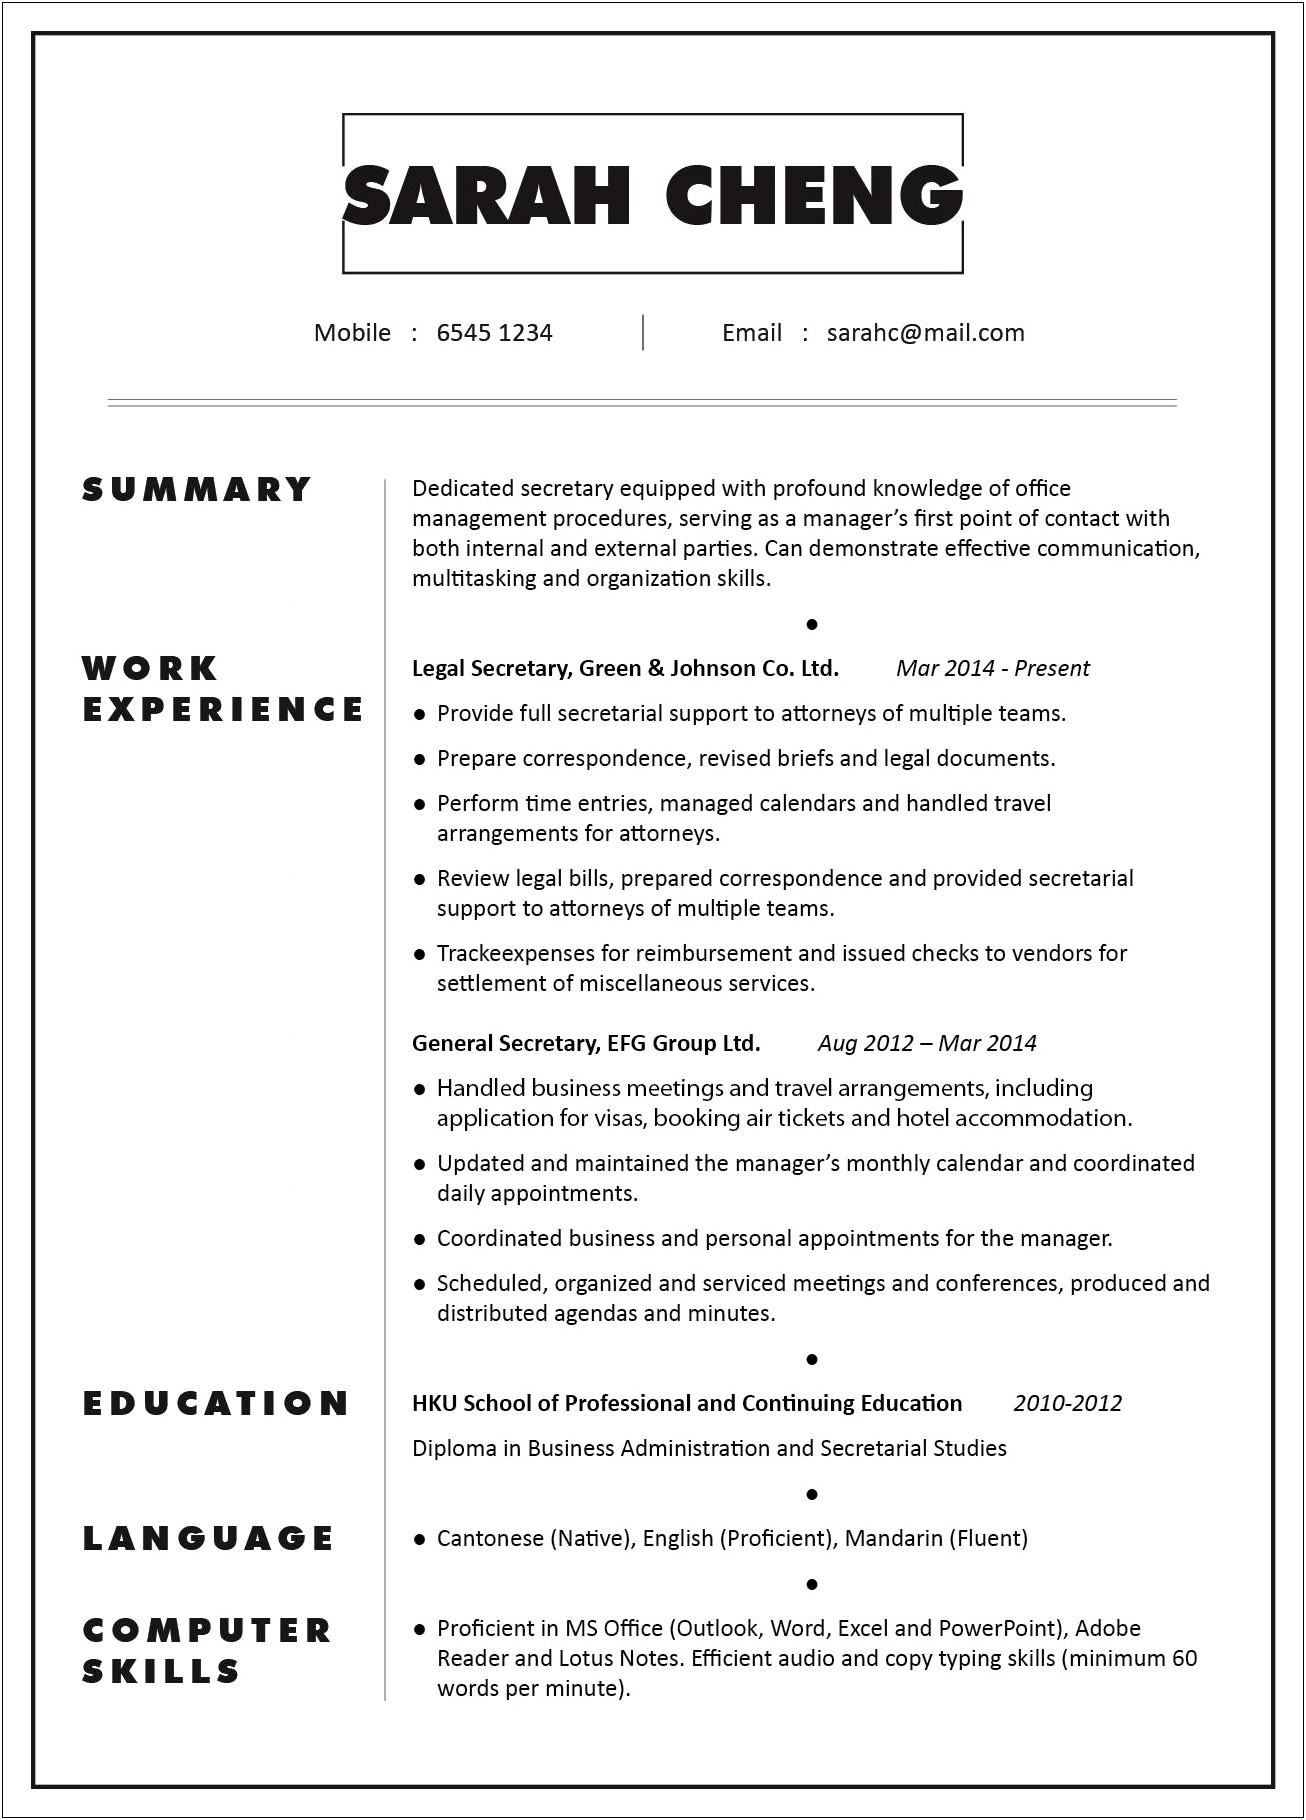 Resume For School Secretary Position Sample